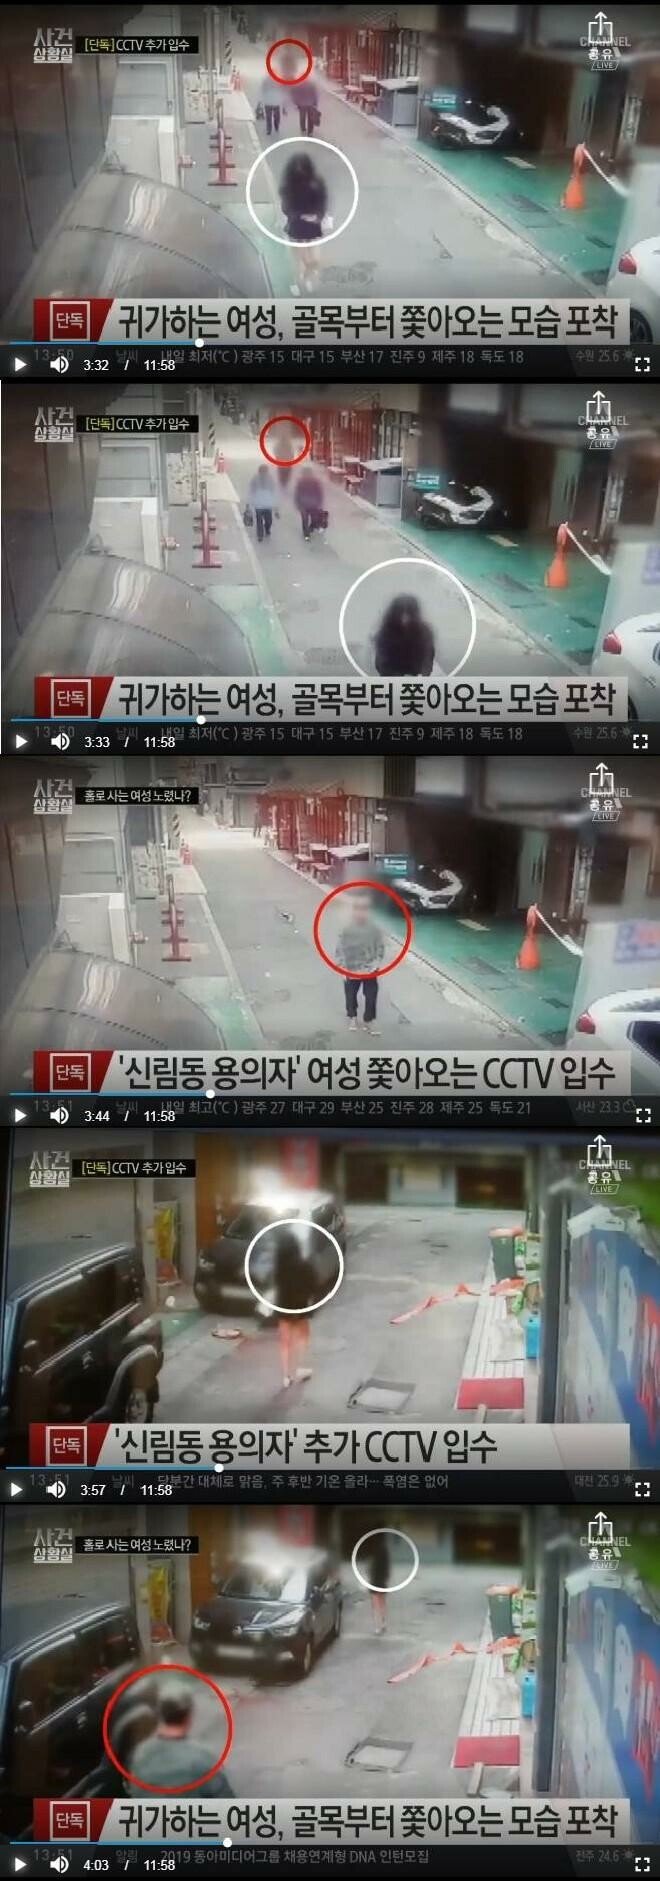 신림동 사건 새로운 CCTV영상 공개